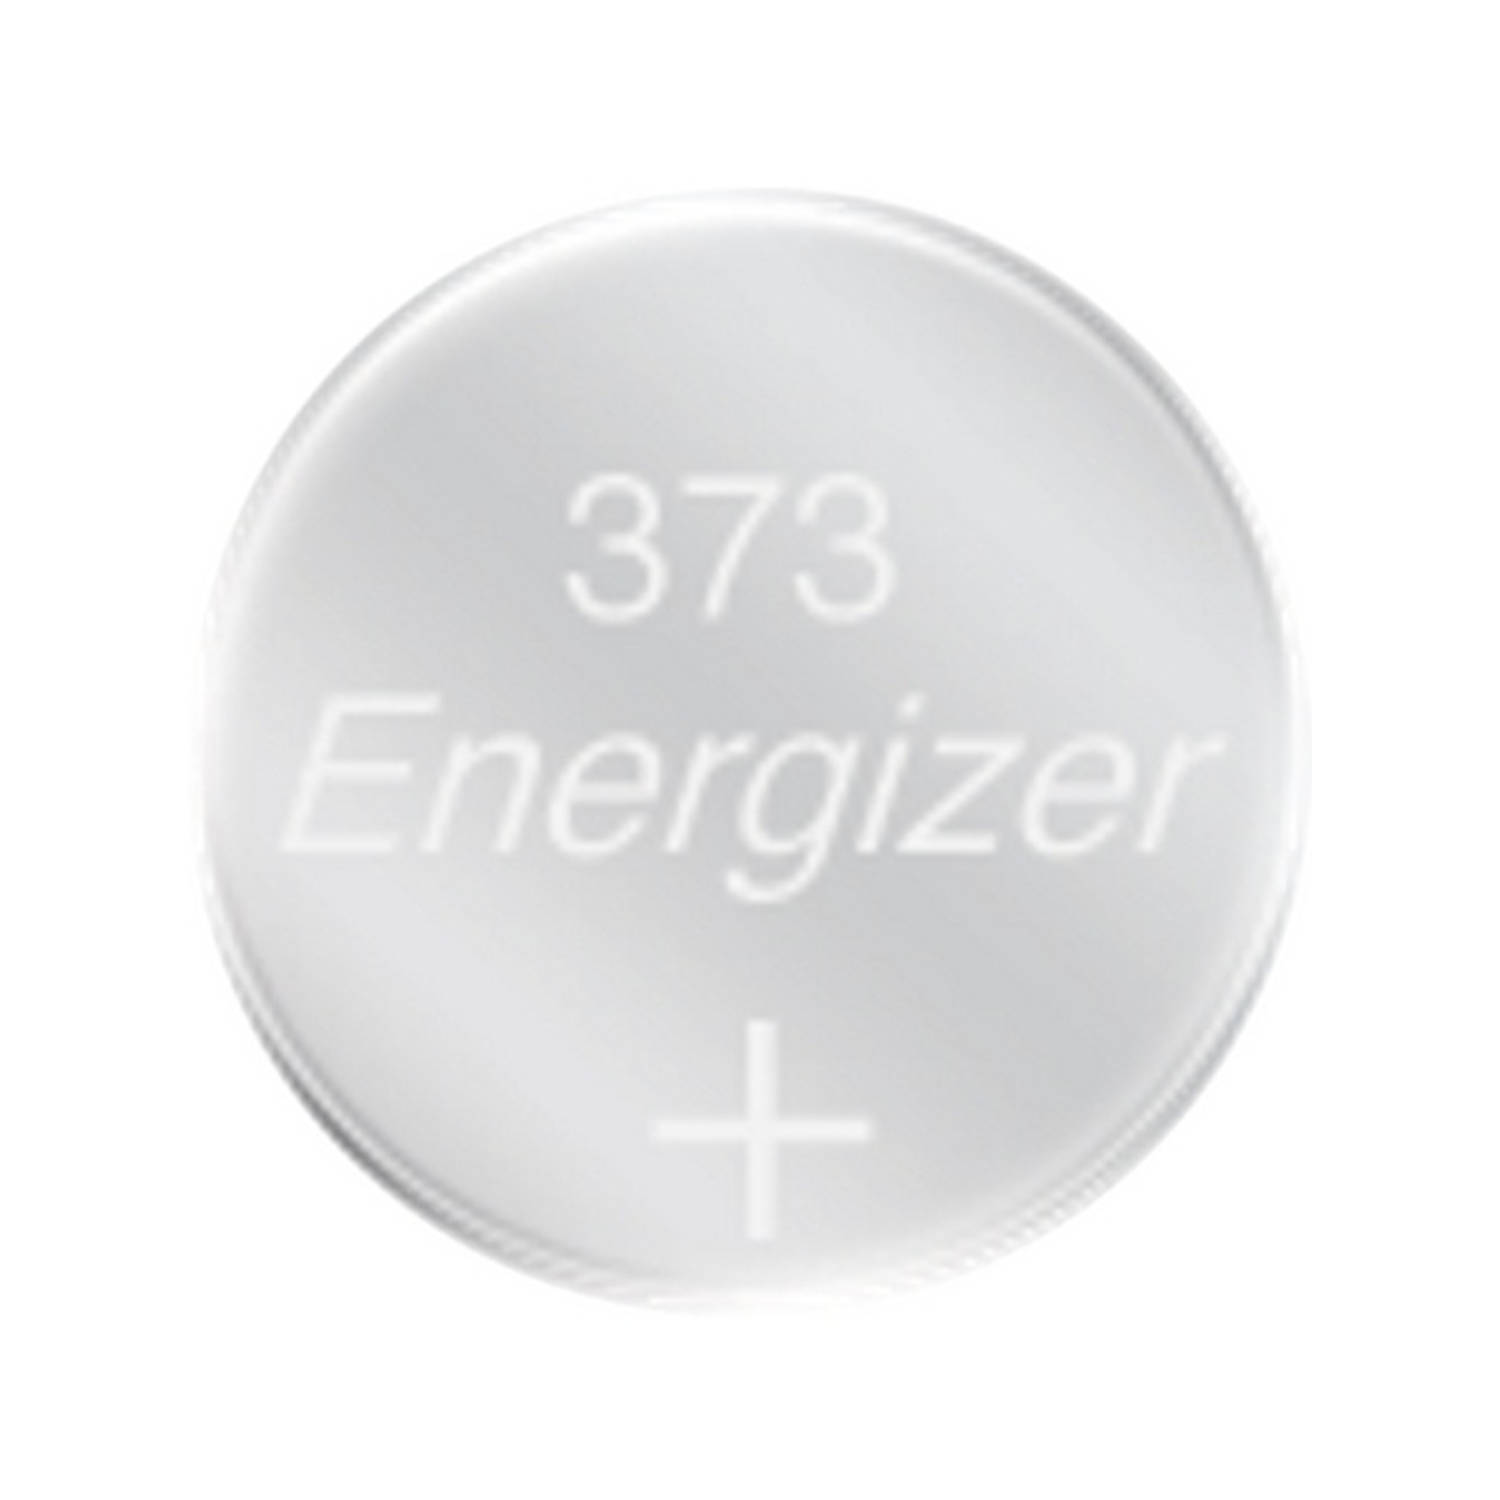 Energizer En373p1 373 Horlogebatterij 1.55v 30 mah